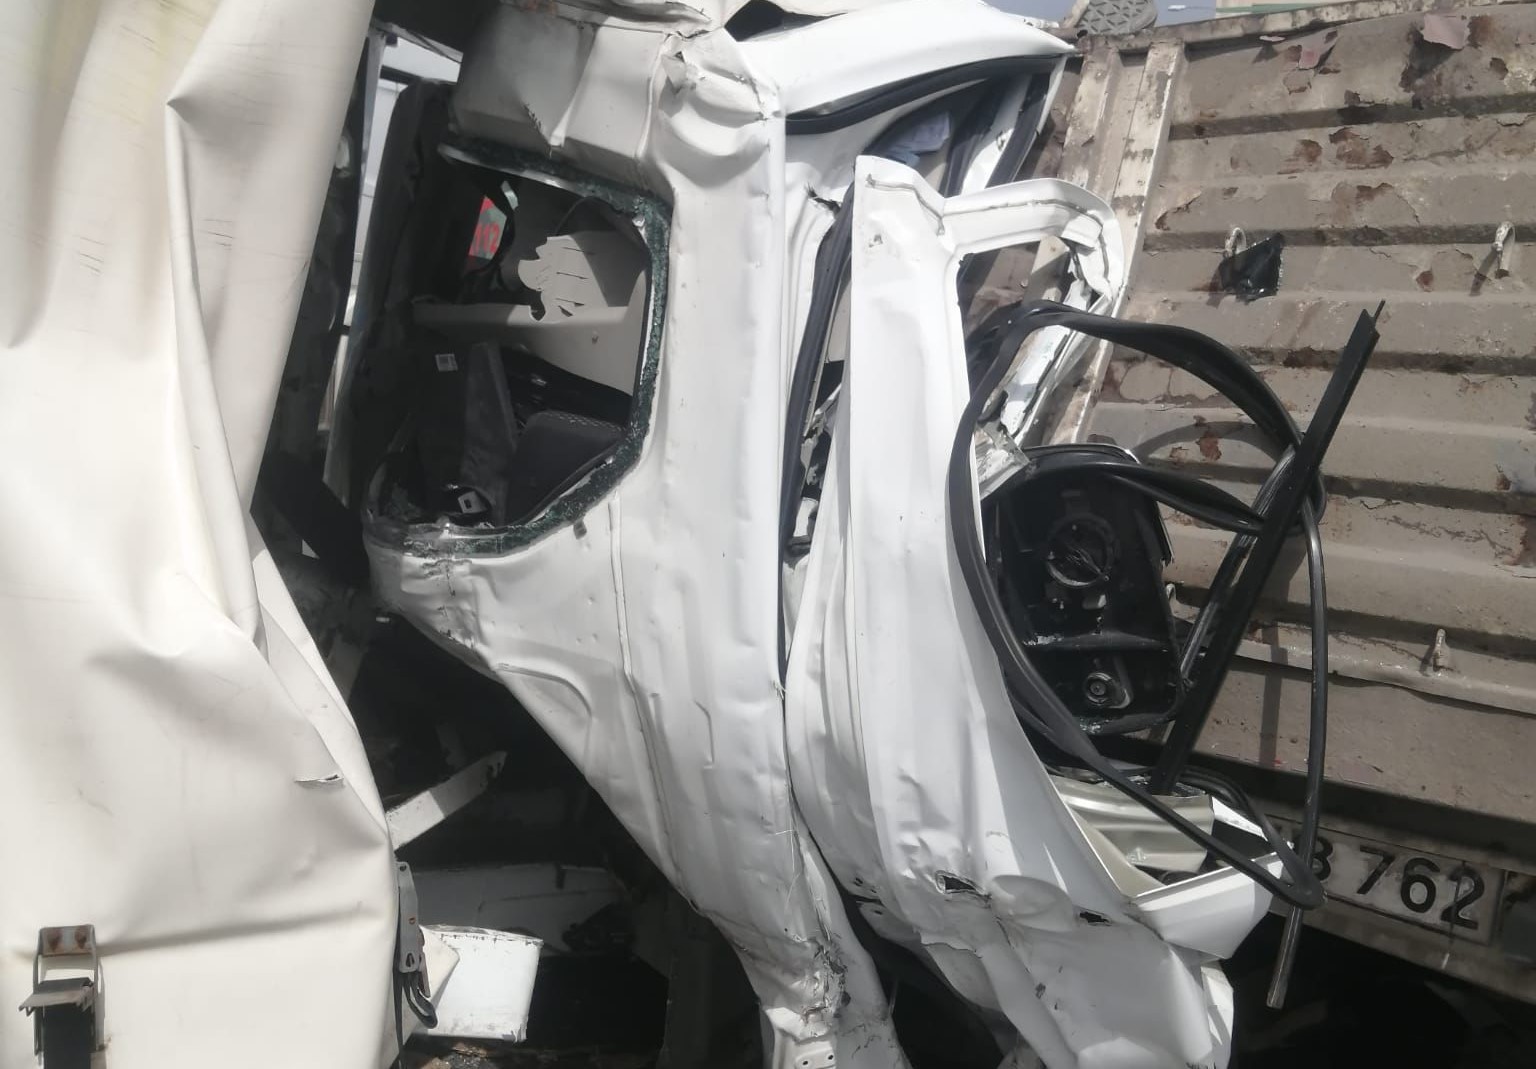 Manisa'da Feci Kaza Tıra Arkadan Çarpan Kamyonet Sürücü Hayatını Kaybetti (2)